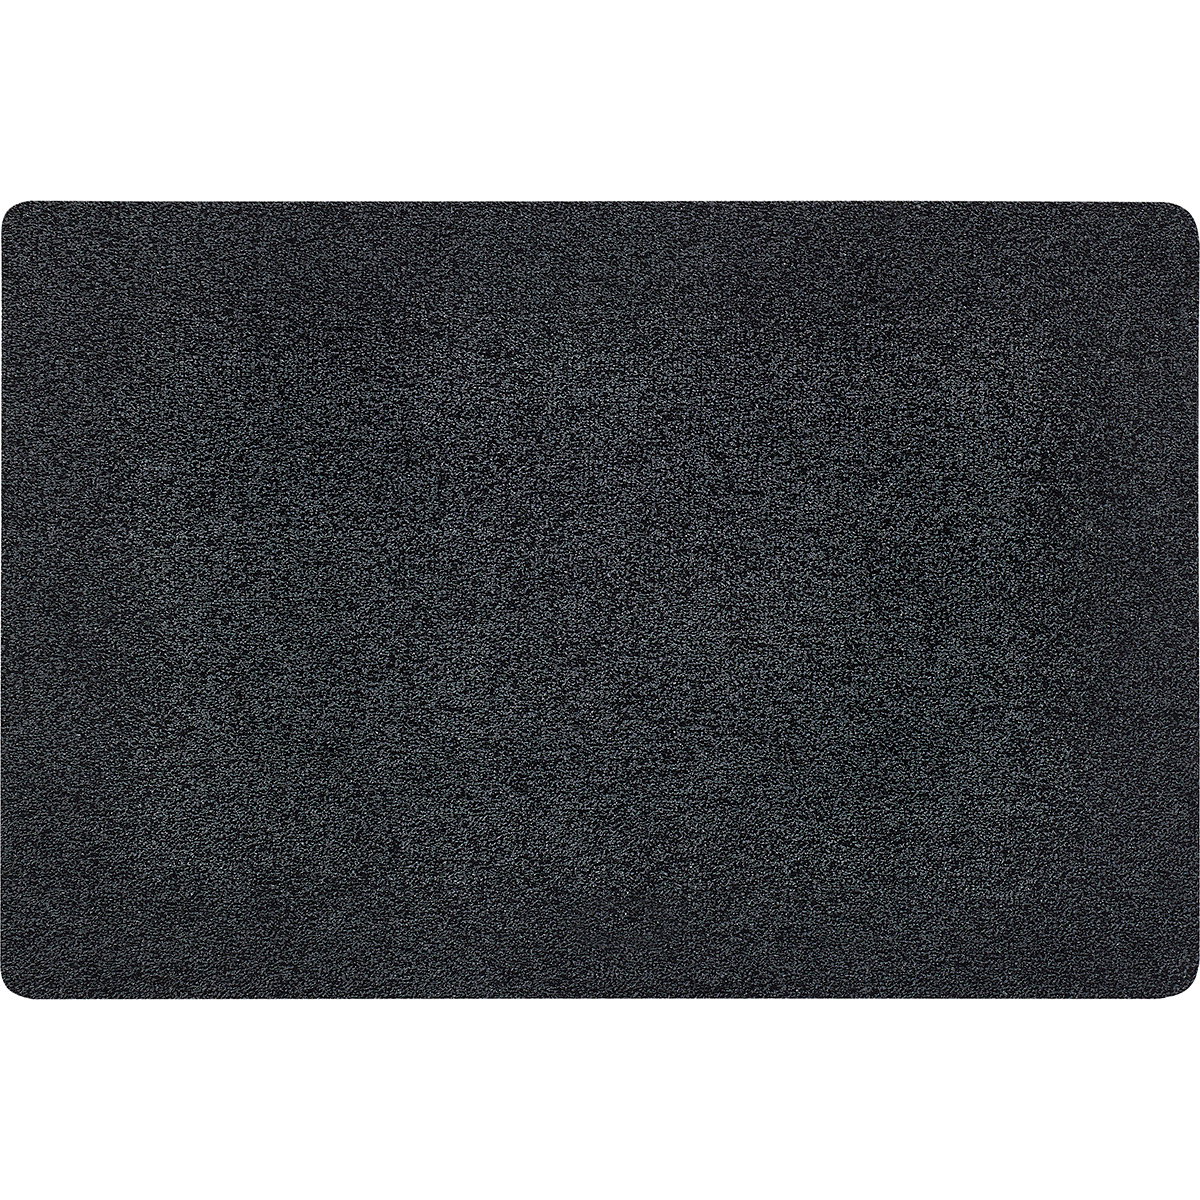 HOMCOM Fußmatte aus Baumwolle waschbar Anthrazit 120 x 80 x 0,45 cm   Aosom günstig online kaufen